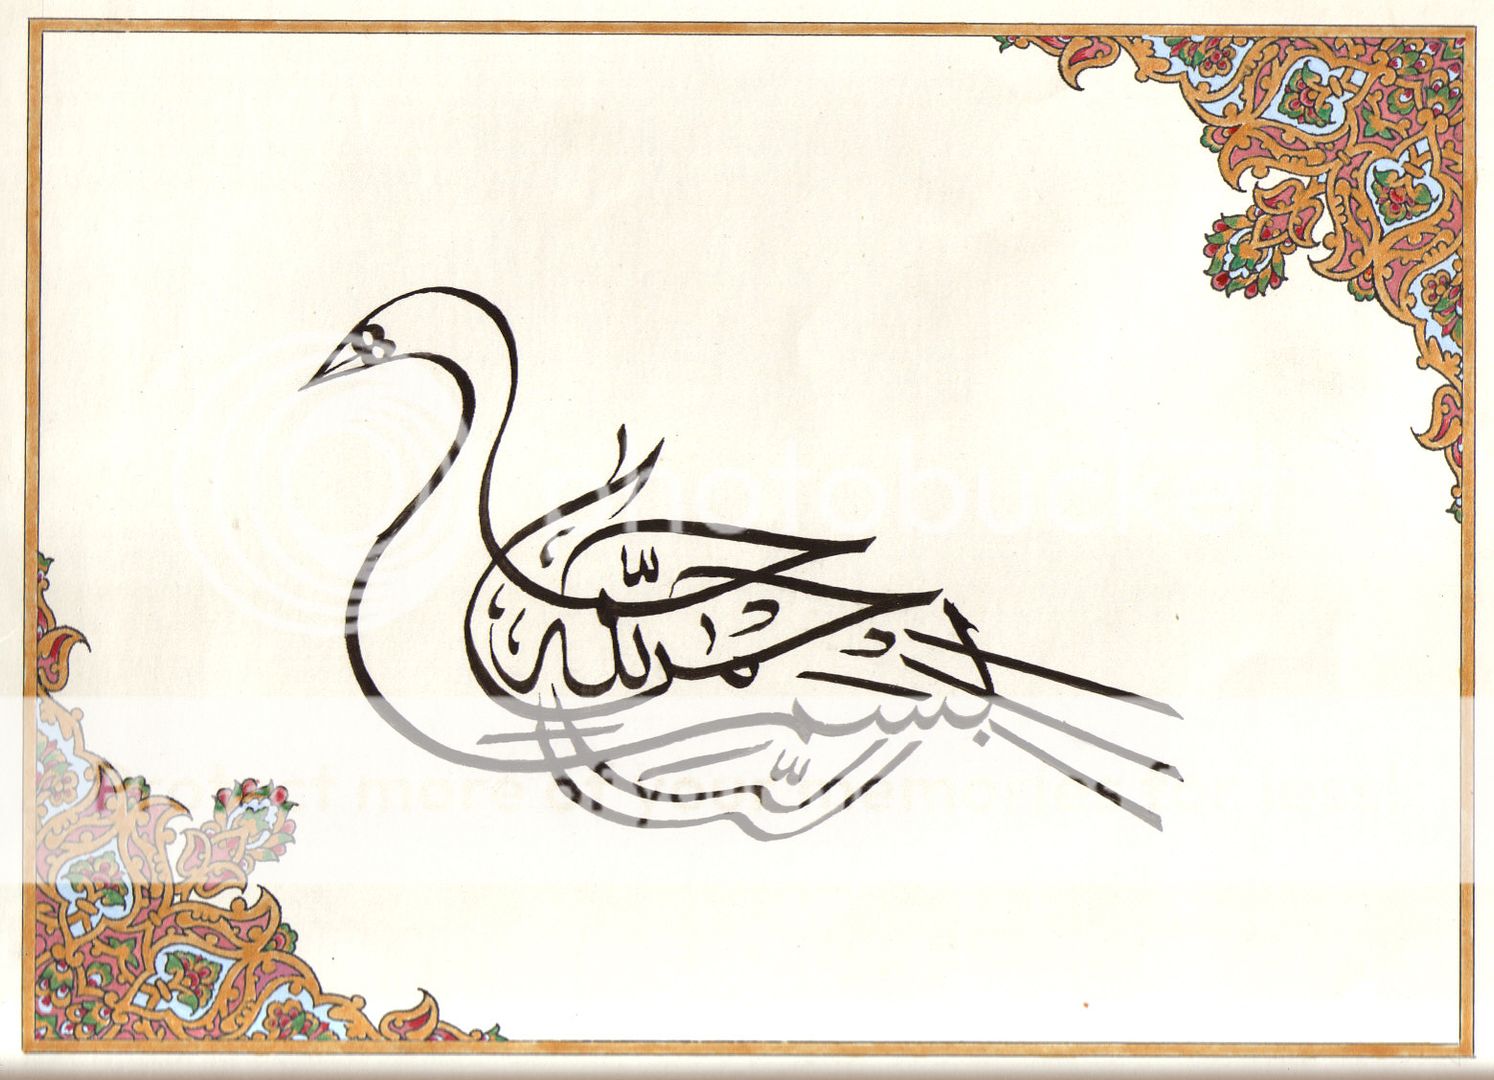 Islam Zoomorphic Calligraphy Art Handmade Turkish Persian Arabic